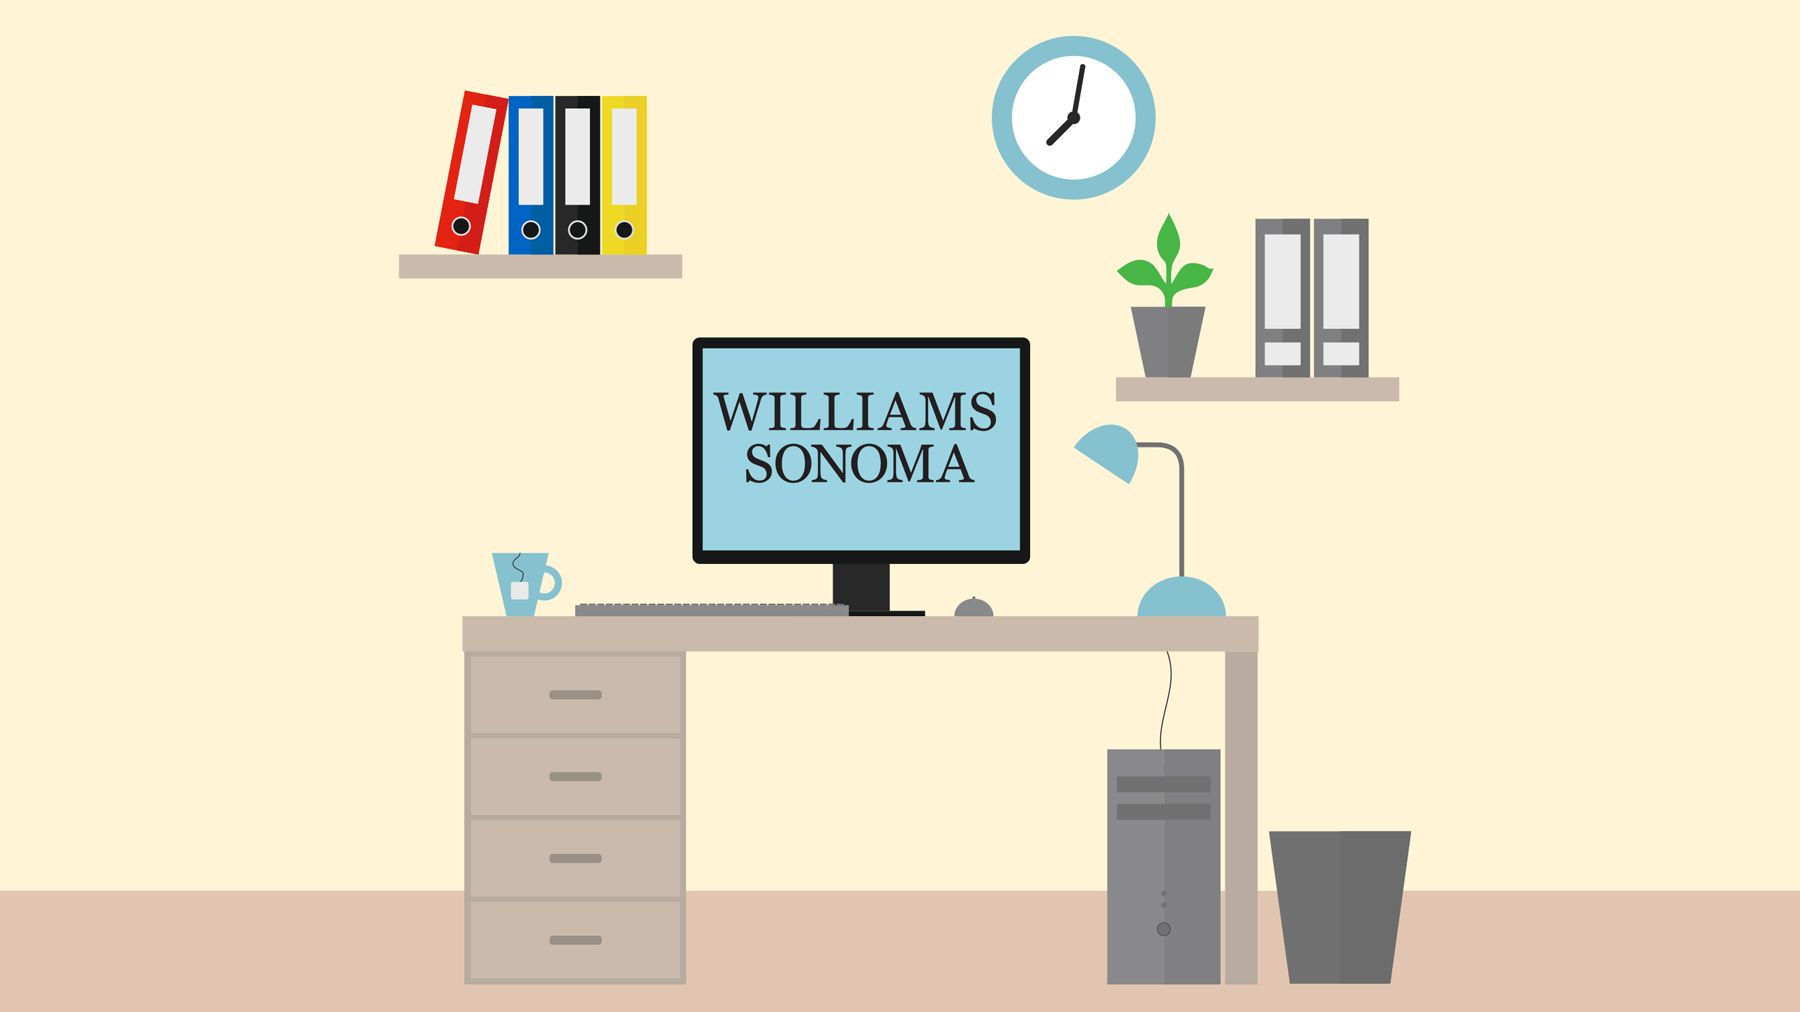 ویلیامز سونوما قبل از تعطیلات هزاران کارمند فصلی از خانه را استخدام می کند